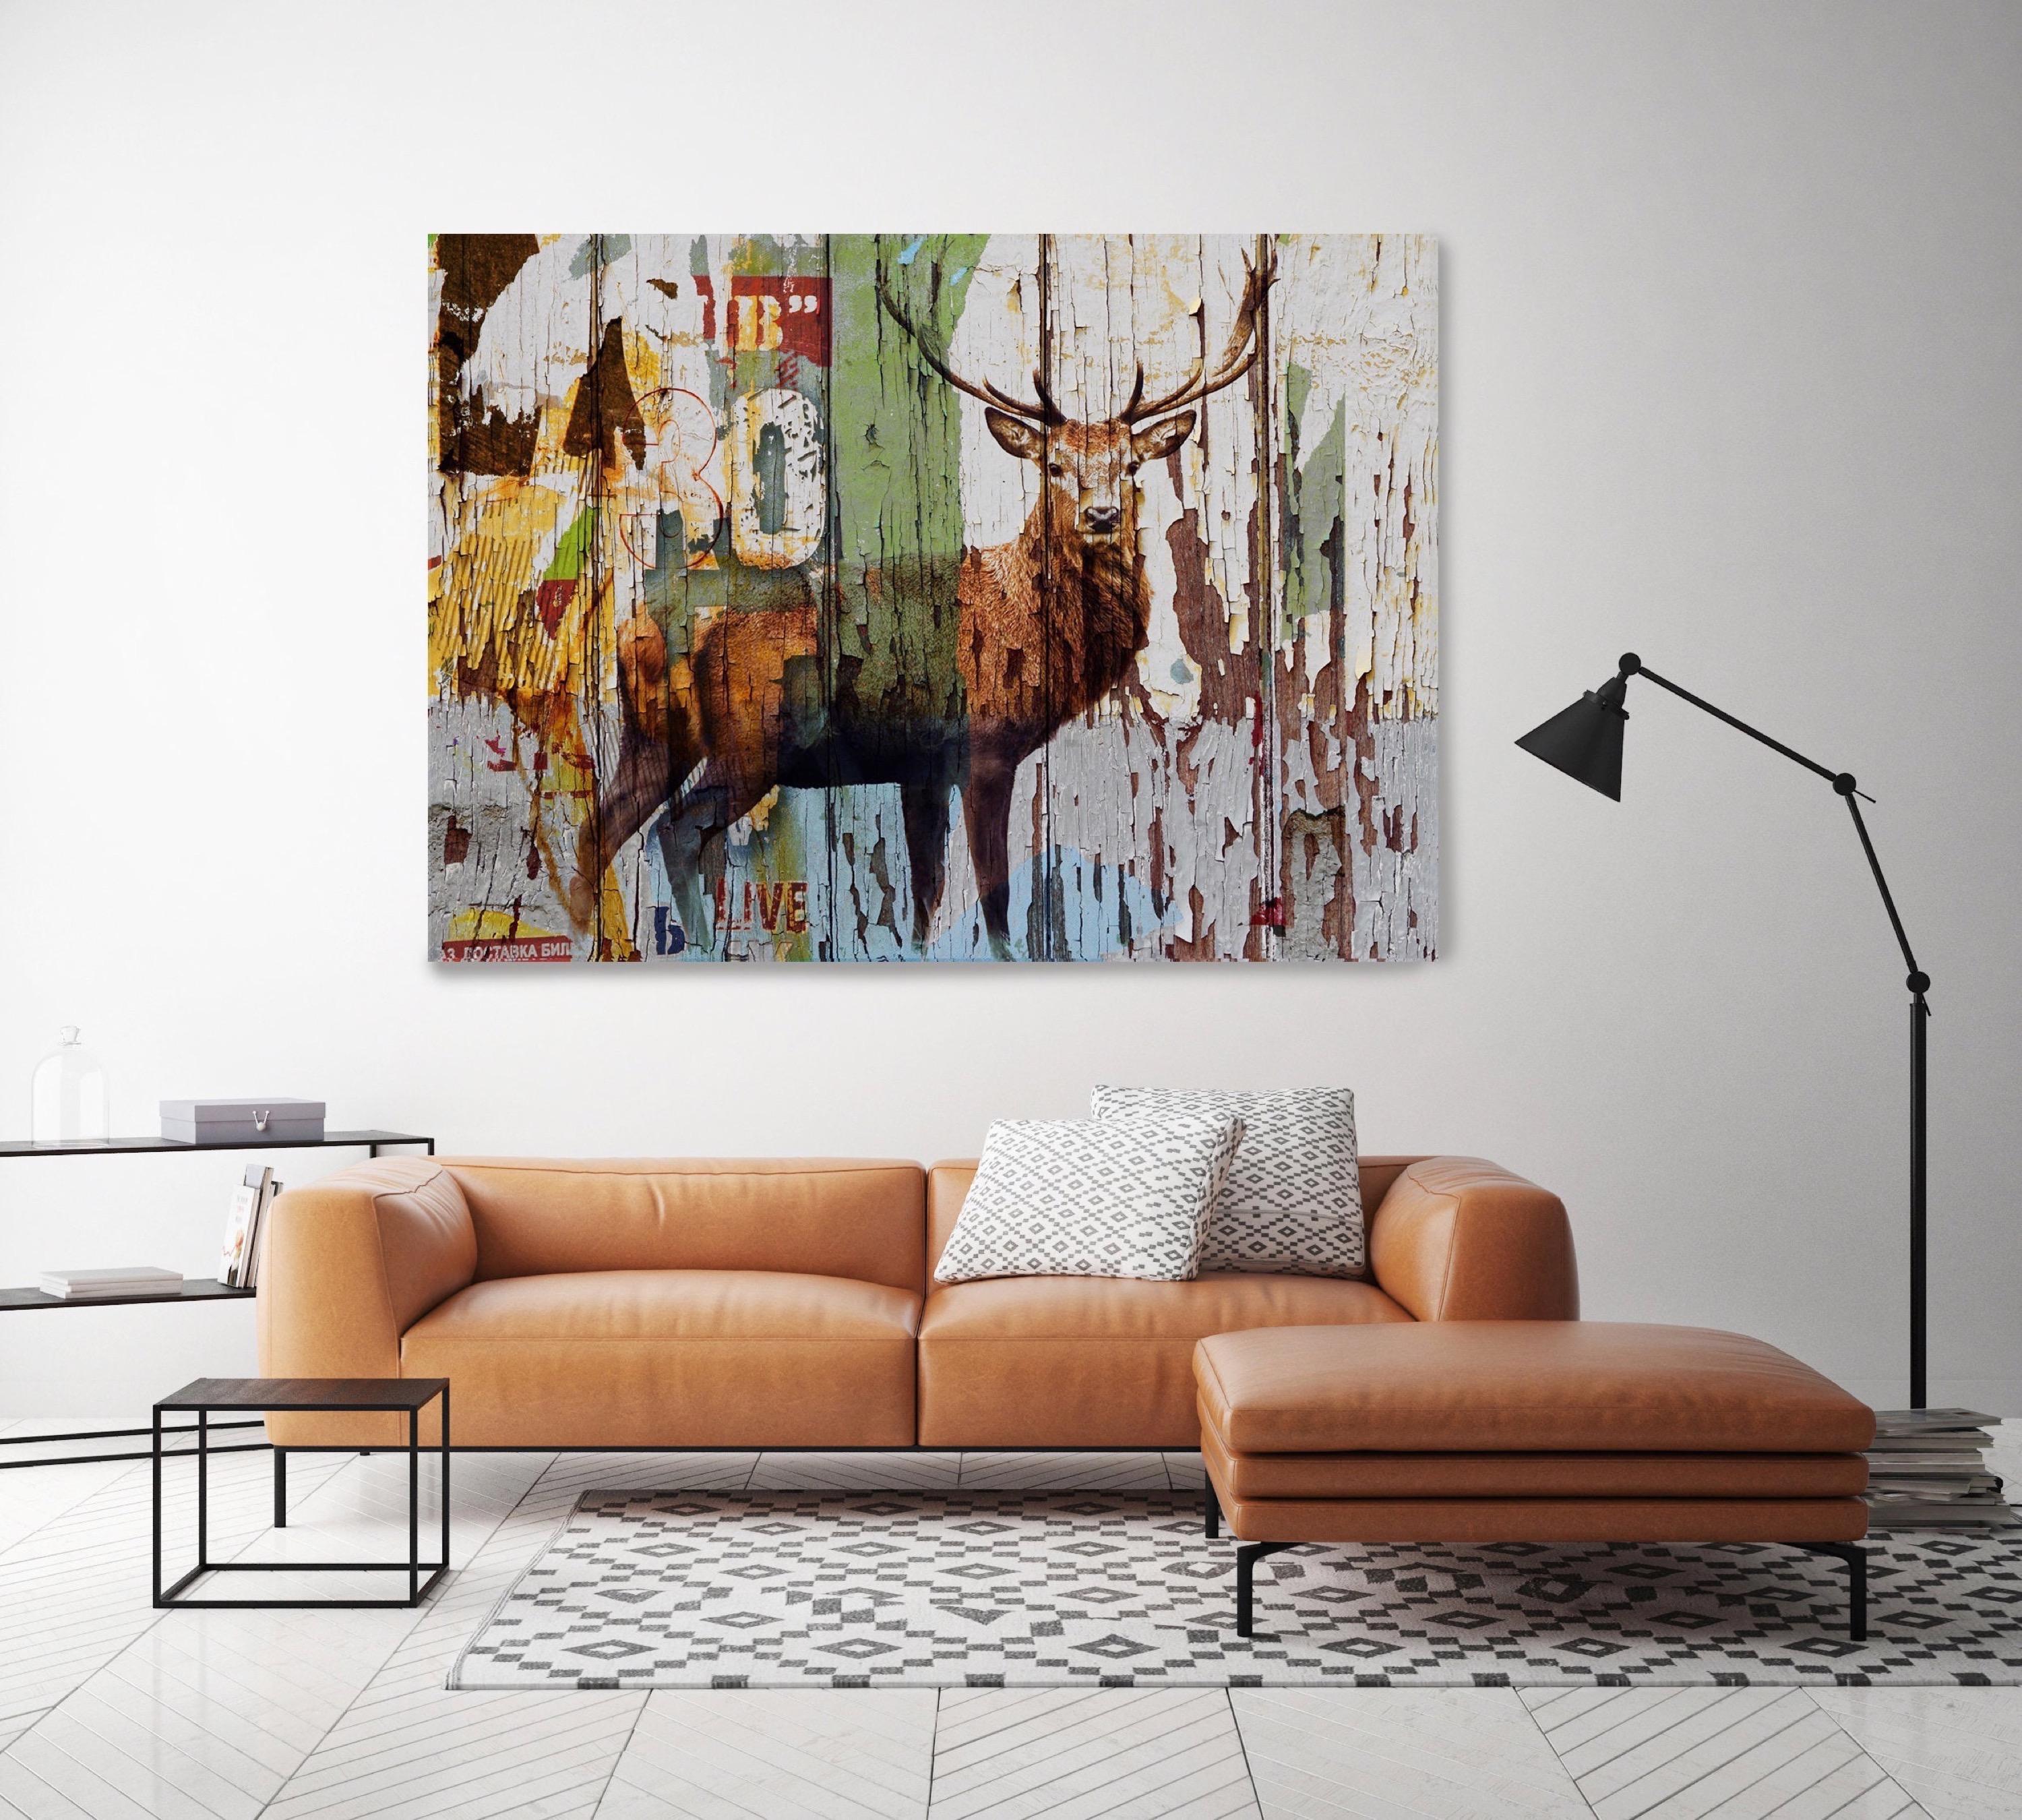 Peinture technique mixte rustique sur toile - Ferme de cerf - 152,4 x 101,6 cm - Contemporain Mixed Media Art par Irena Orlov